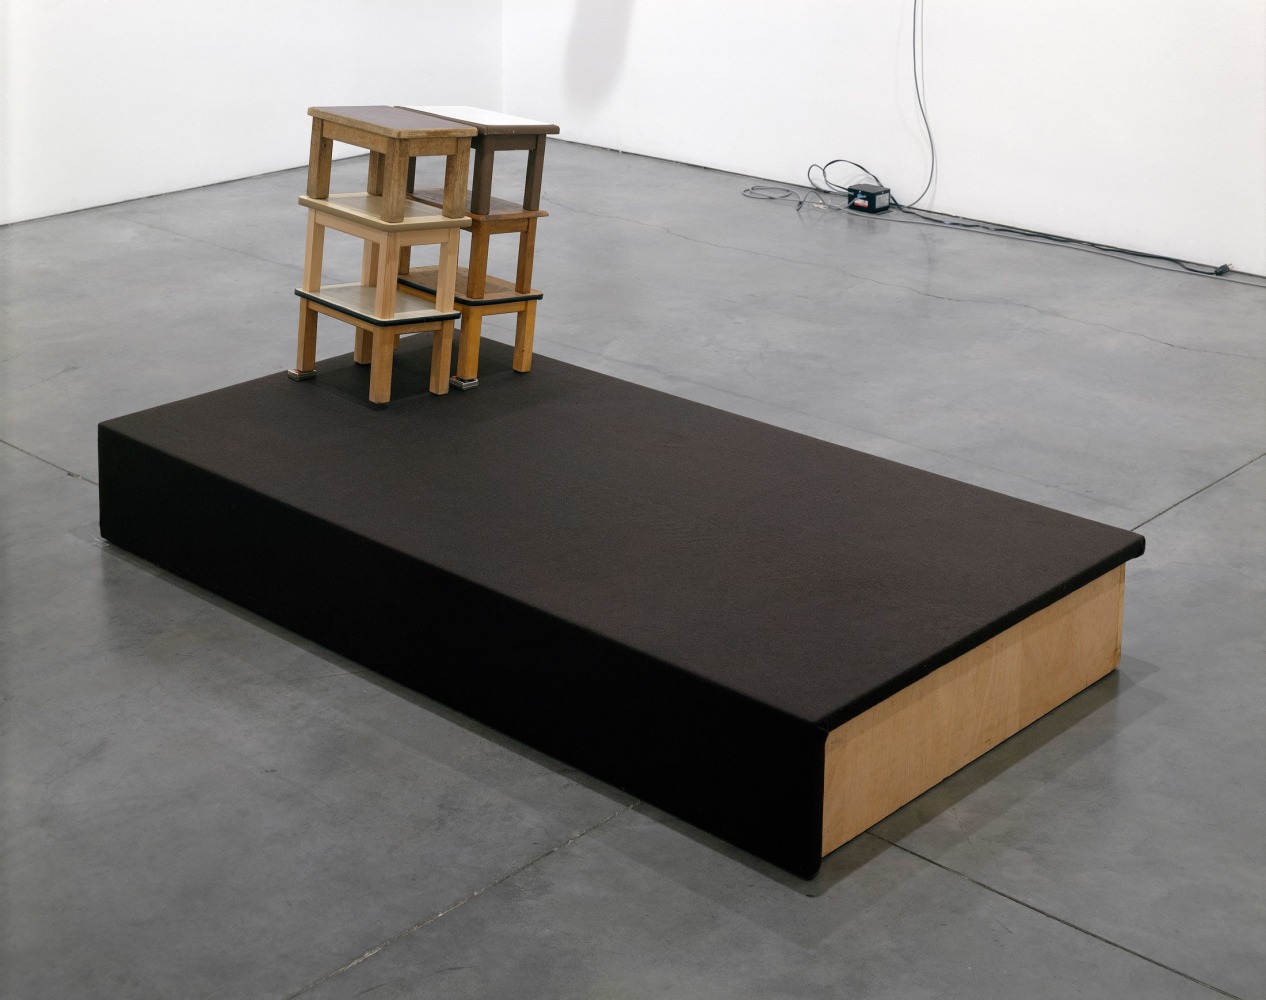 Reinhard Mucha
[Eichen] ex Freren, [2009], 1984
Wood, felt, metal, PVC, Linoleum, Formica
34 3/4 x 75 1/4 x 38 3/4 inches
(88 x 191 x 98.5 cm)